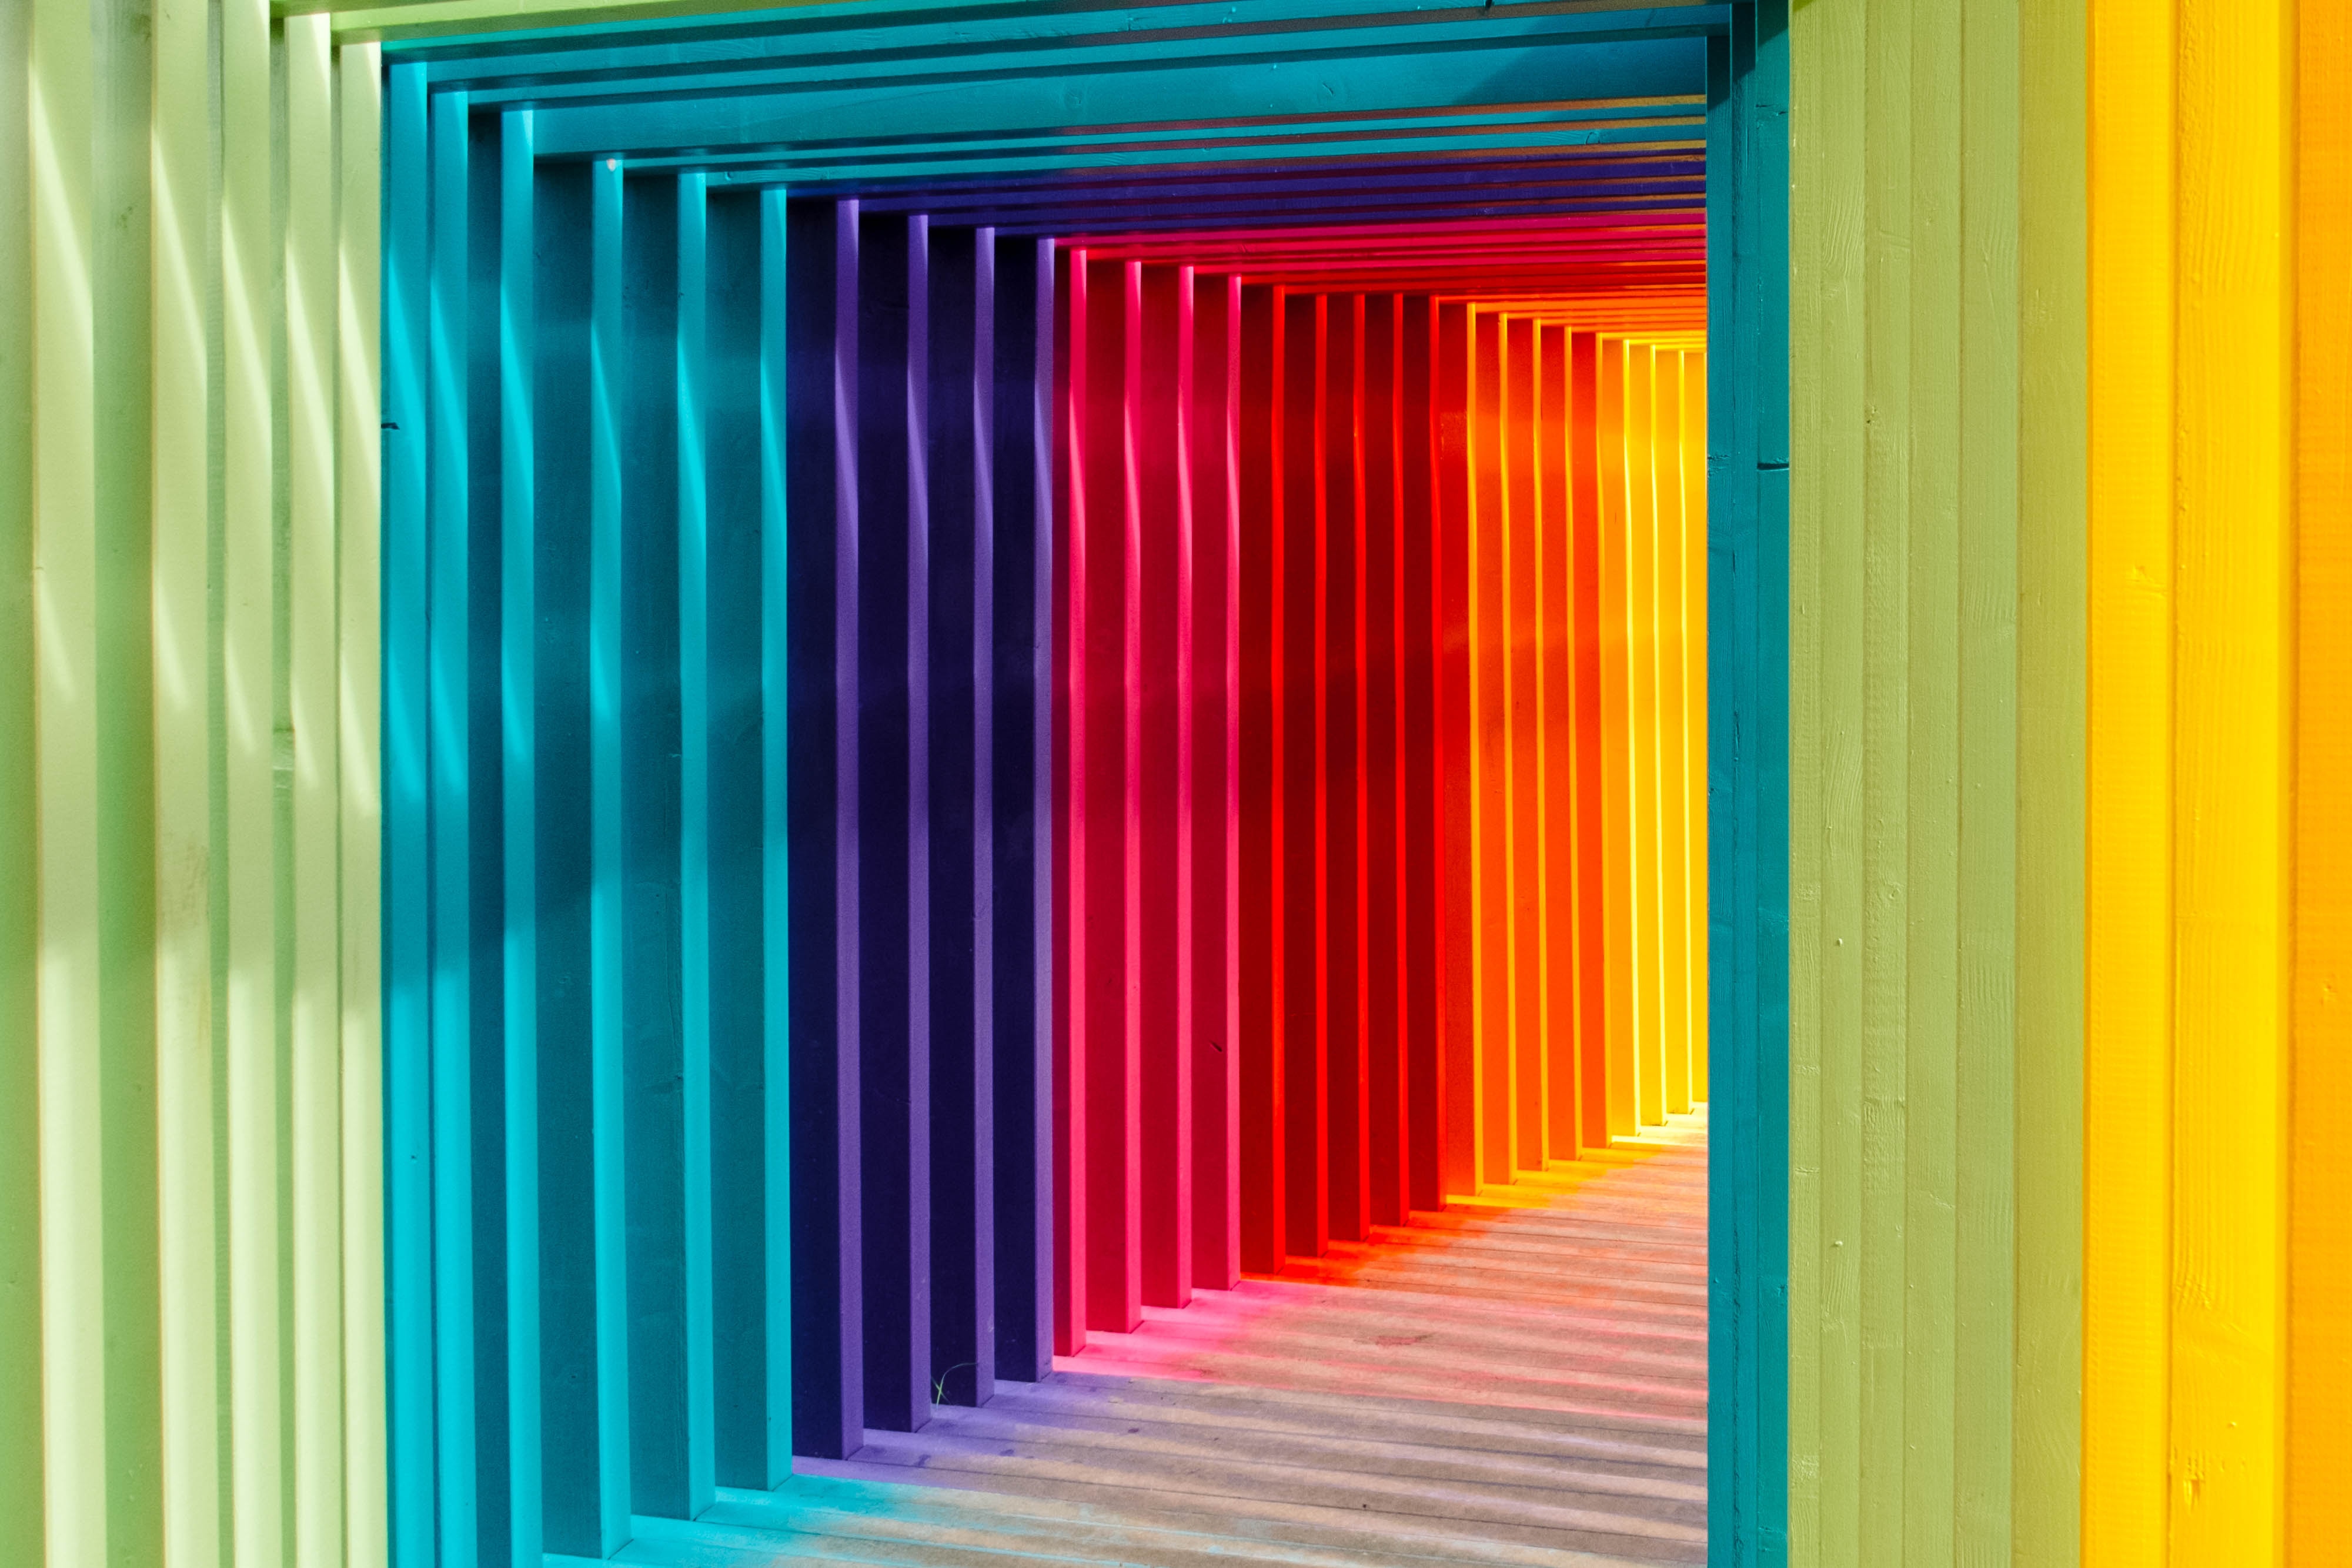 Bildebeskrivelse: Bilde av en fargerik spilekorridor med sollys i enden